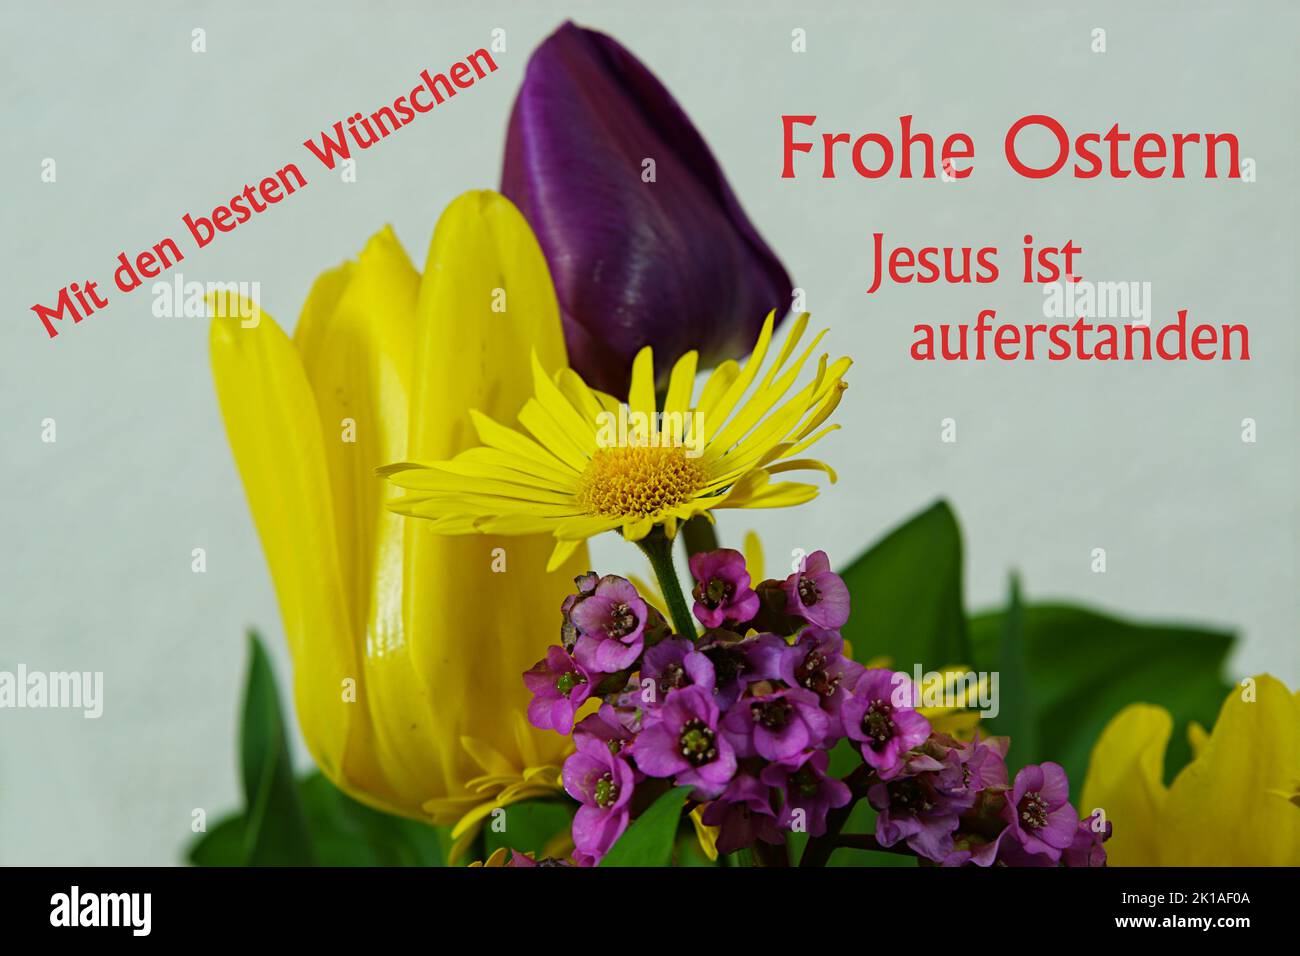 Mit den besten Wünschen - Frühlingsblüten - Frohe Ostern - Jesus ist auferstanden Stock Photo